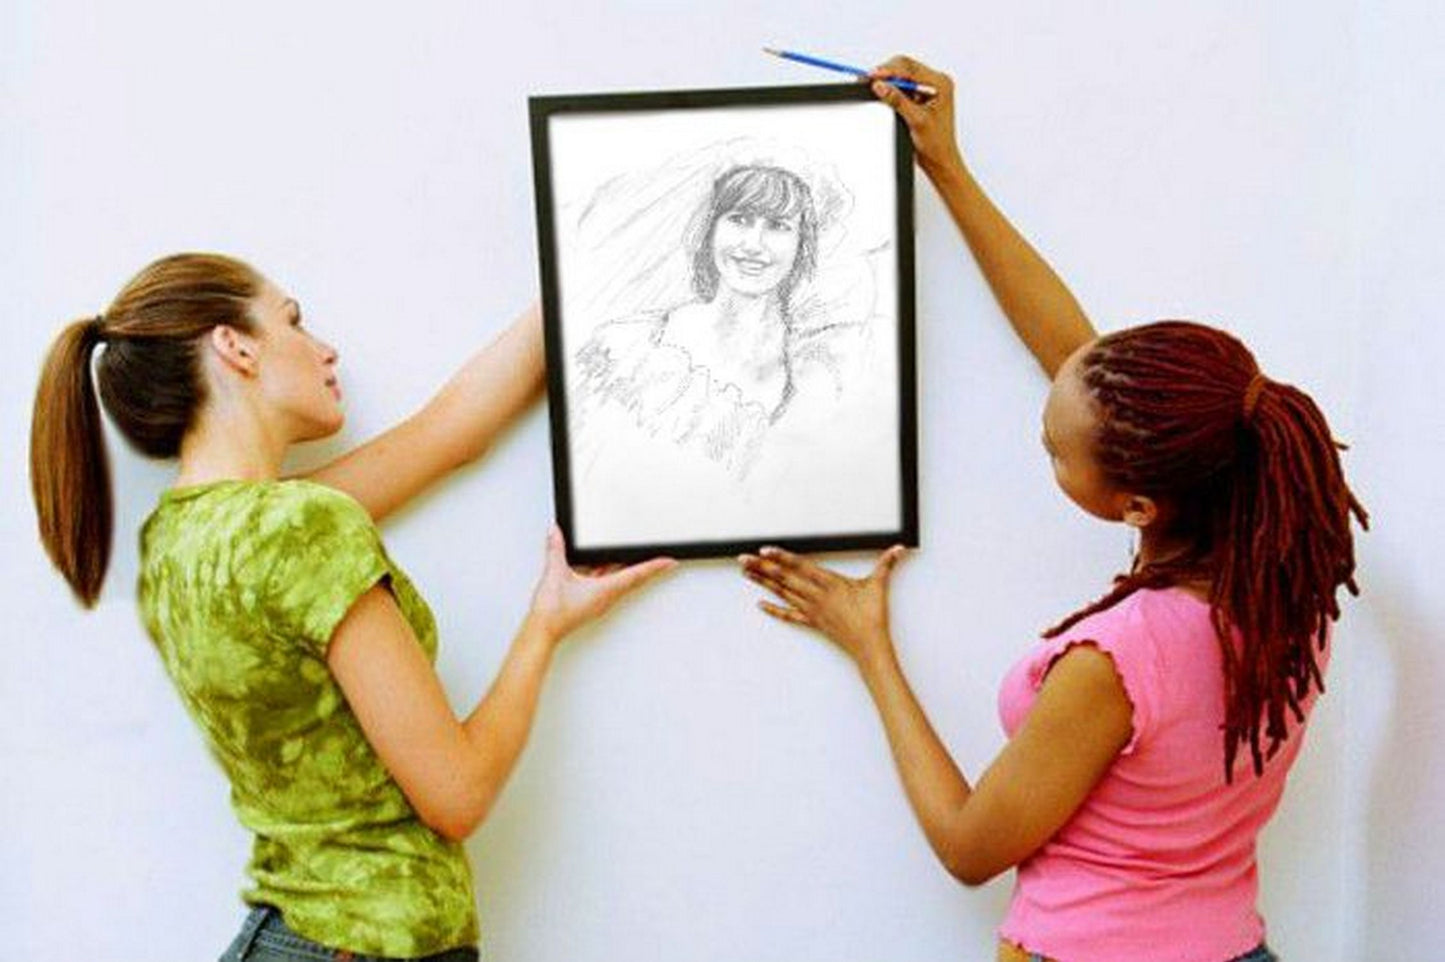 In a virtual frame, Happy bride, pencil sketch on paper